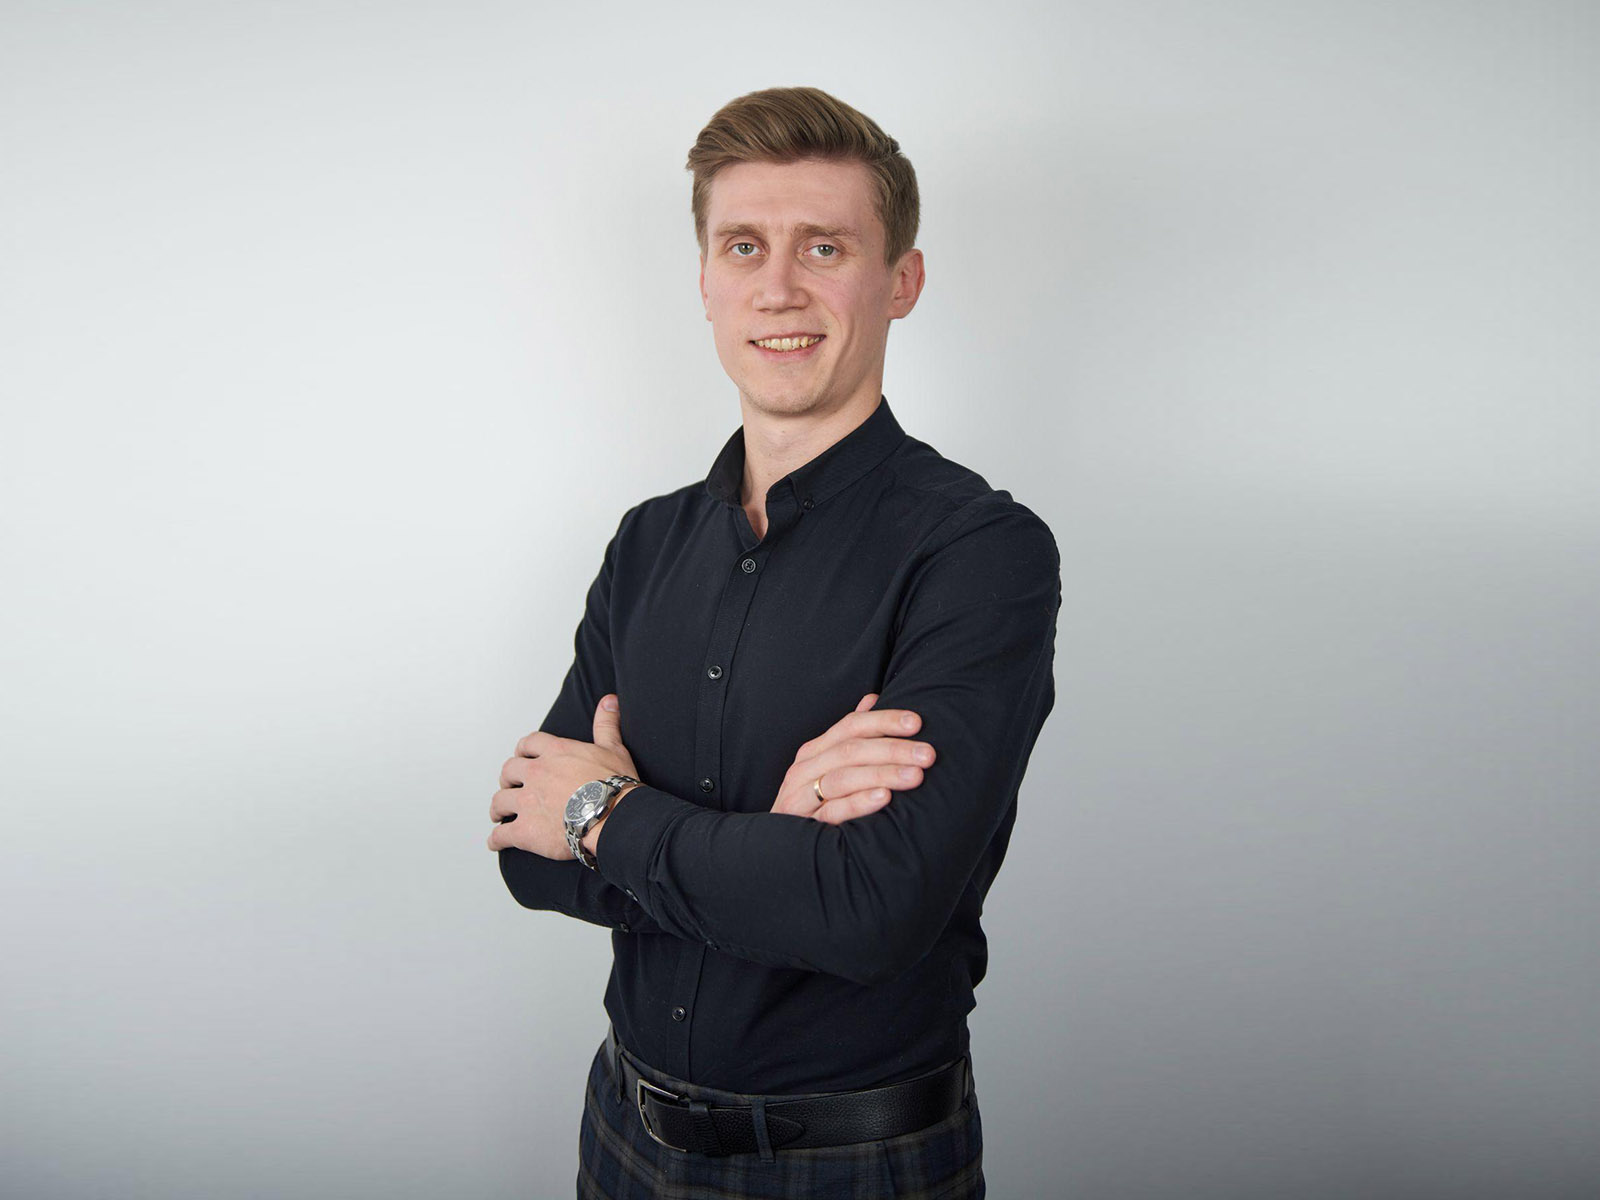 Александр Кандеев  – предприниматель, консультант, эксперт по управлению продажами